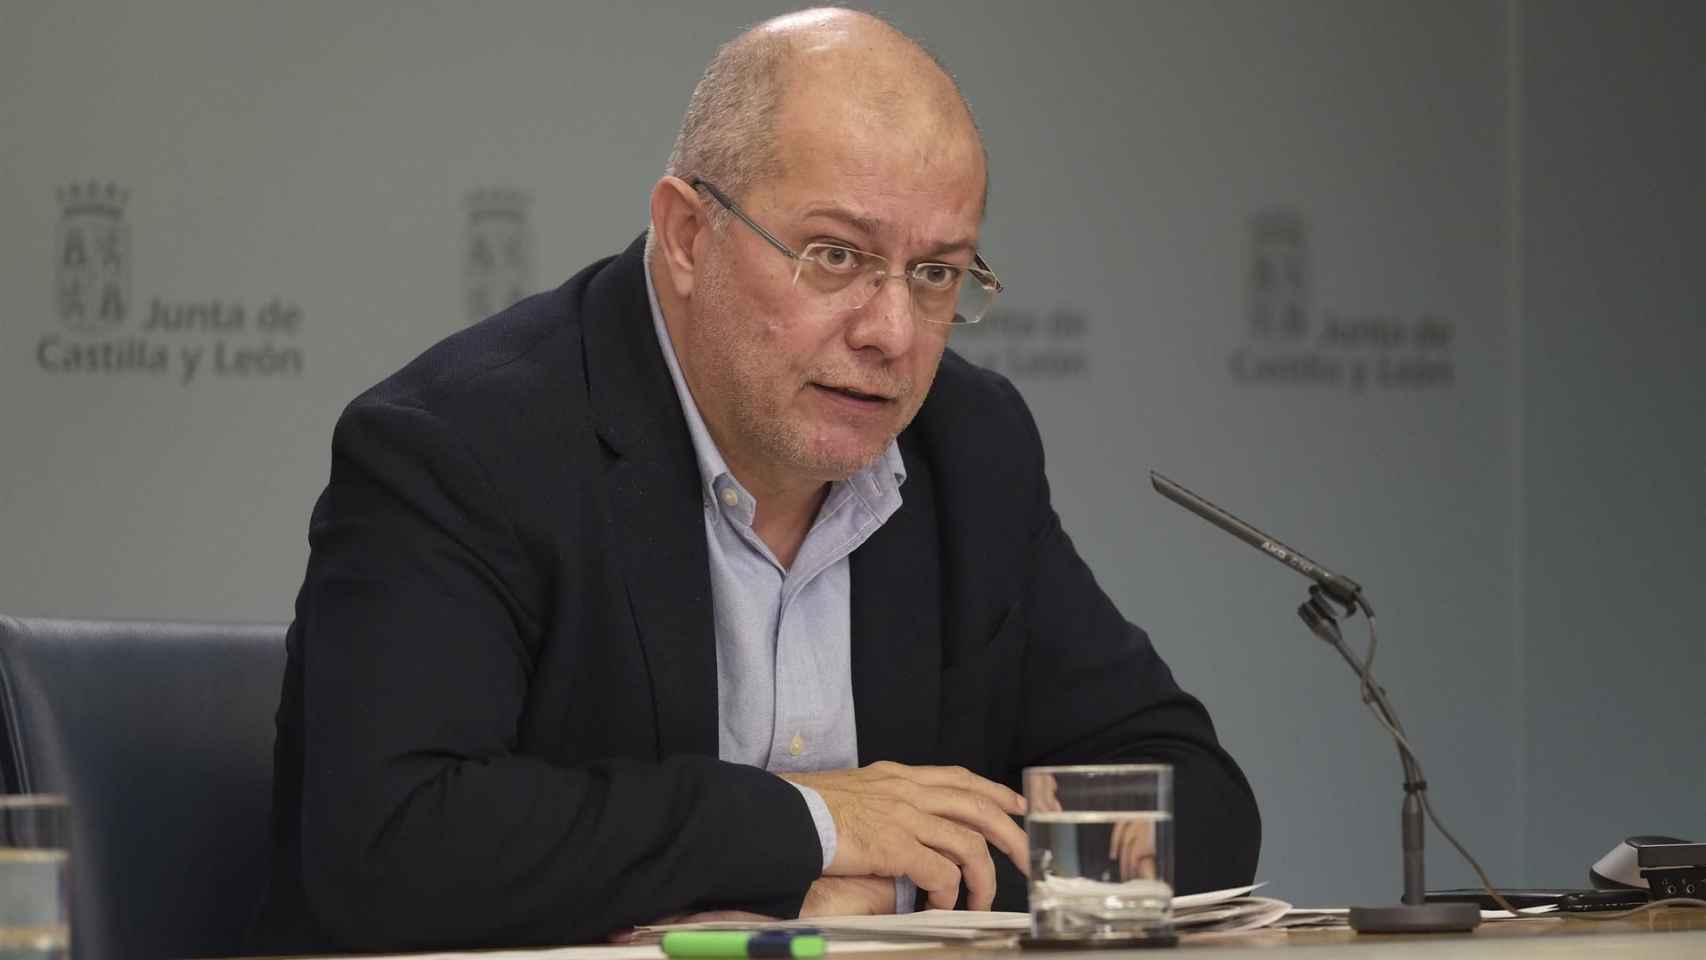 Francisco Igea, figura crítica de Ciudadanos / EUROPA PRESS